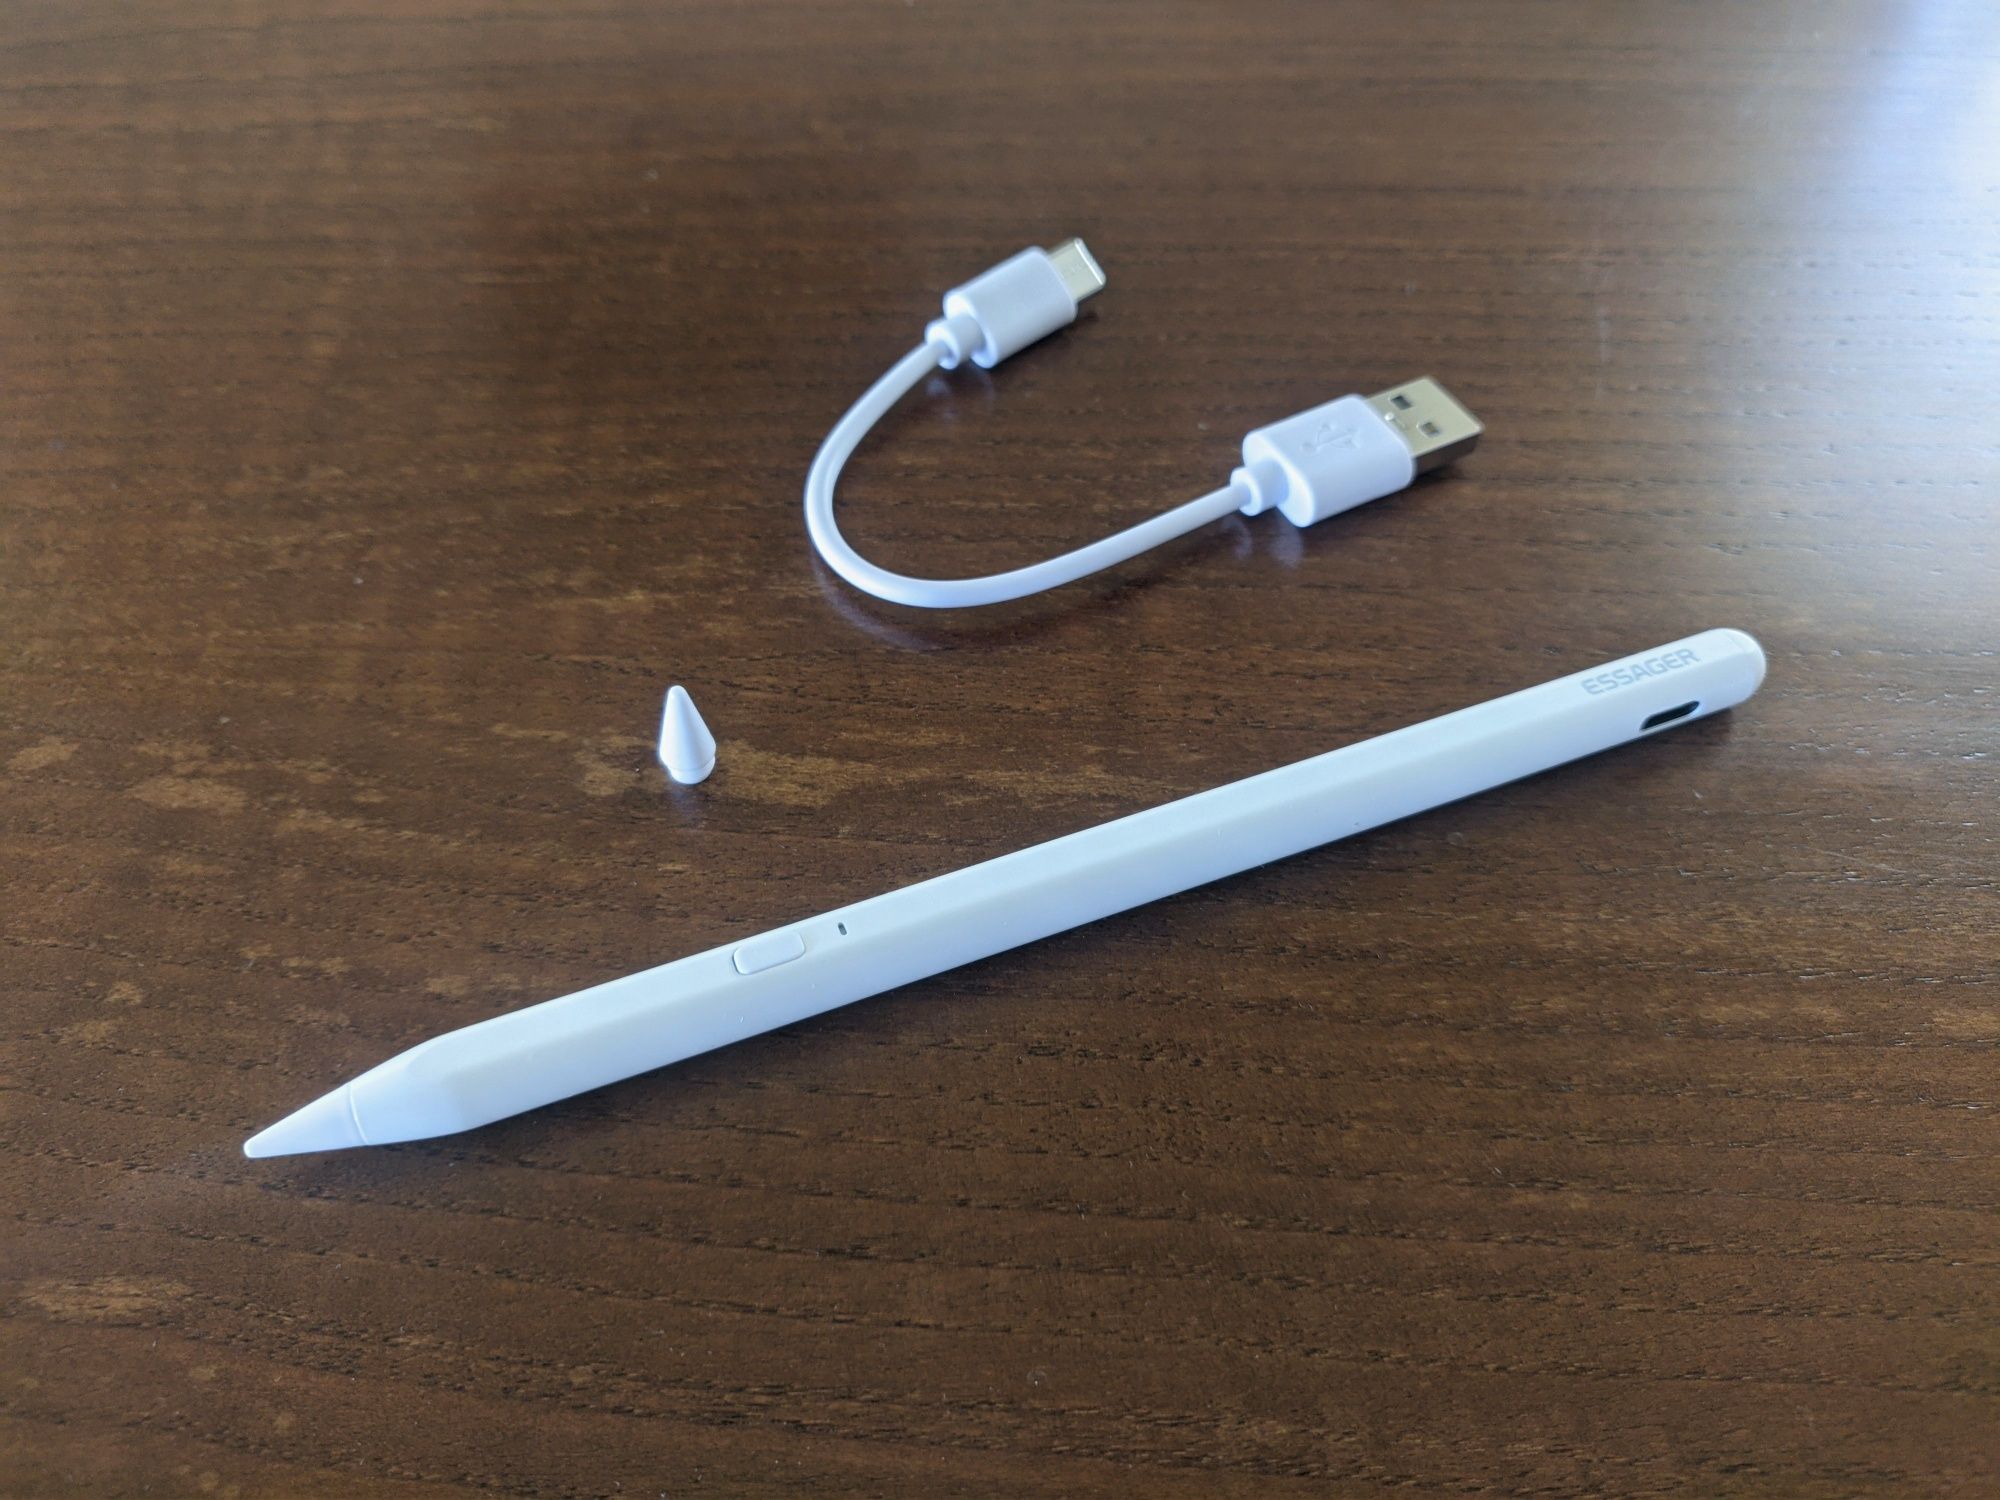 Caneta/Pencil compatível com iPad